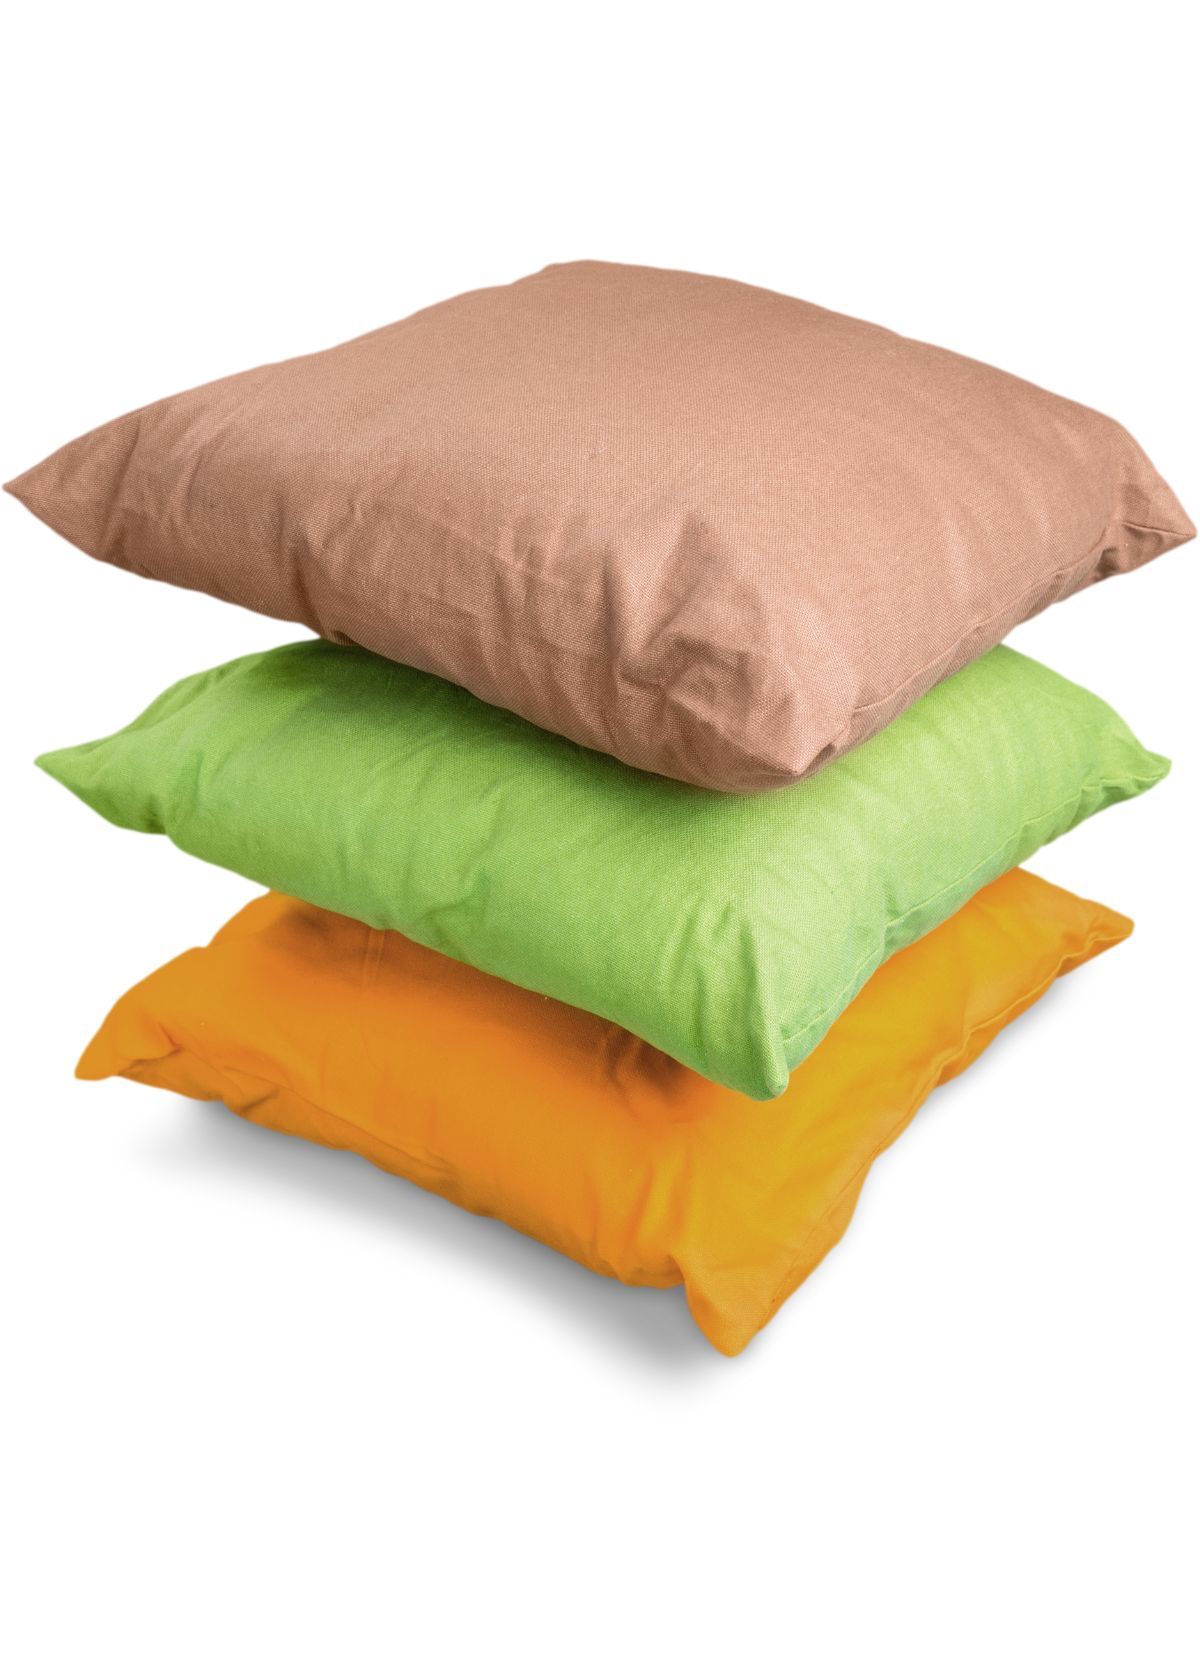 Best Waterproof Pillow Covers Outdoor